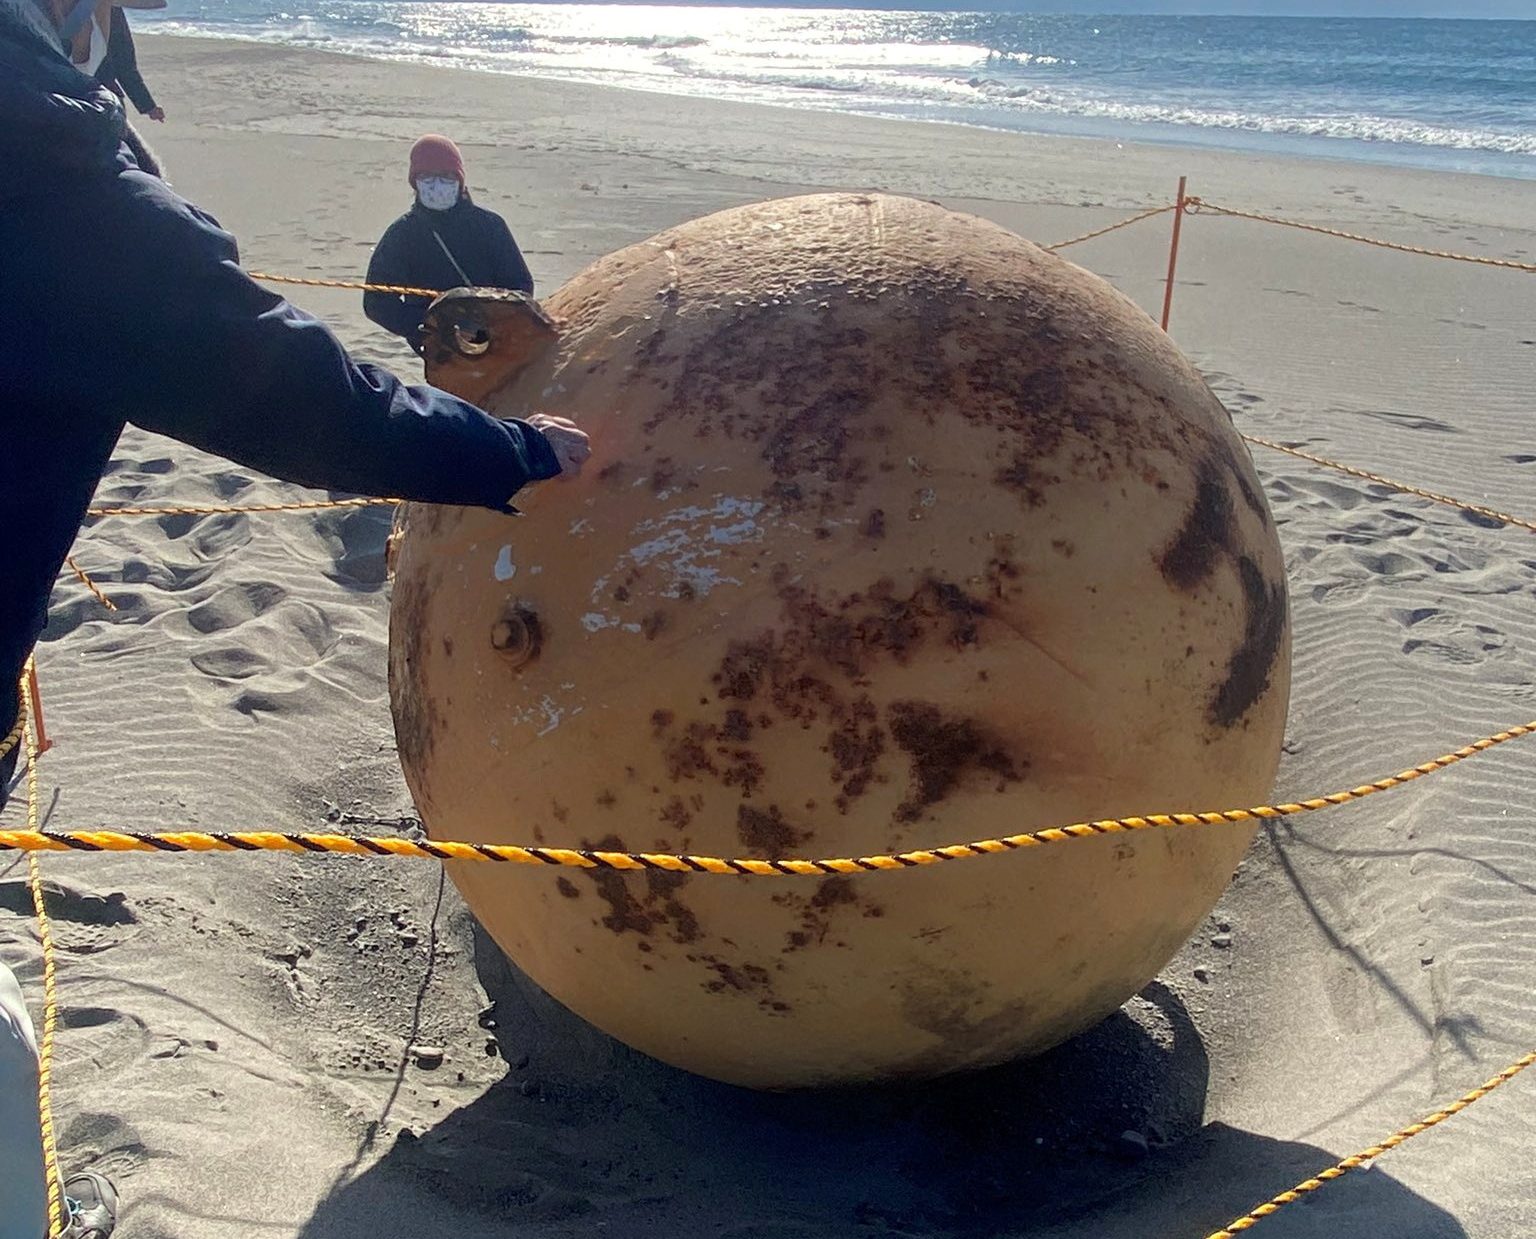 Ιαπωνία: Τίποτα άλλο πέραν μιας απλής σημαδούρας η μπάλα που ξεβράστηκε σε παραλία